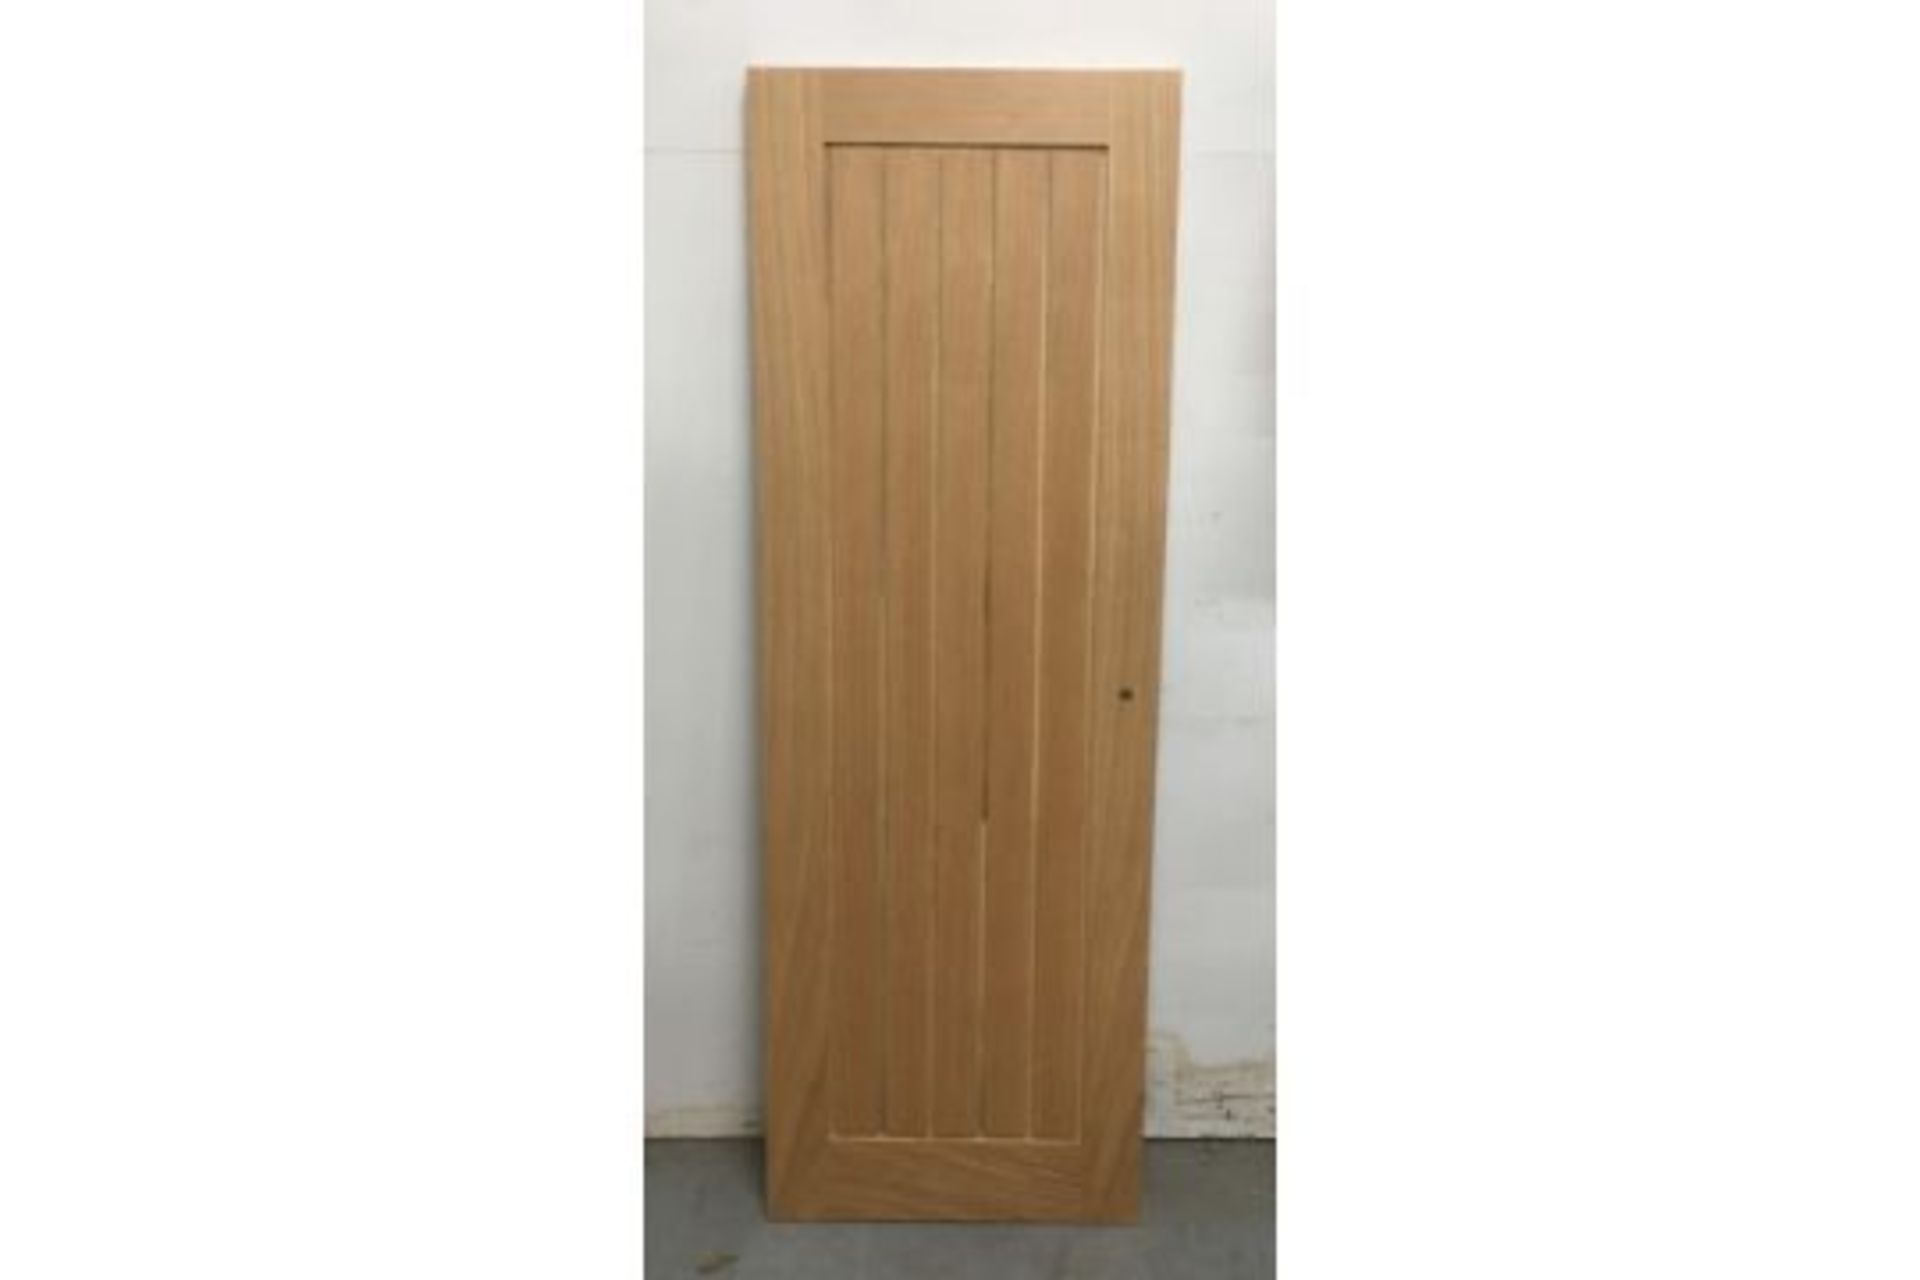 5 x Various Grid Patten Internal Wooden Doors As Per Decription